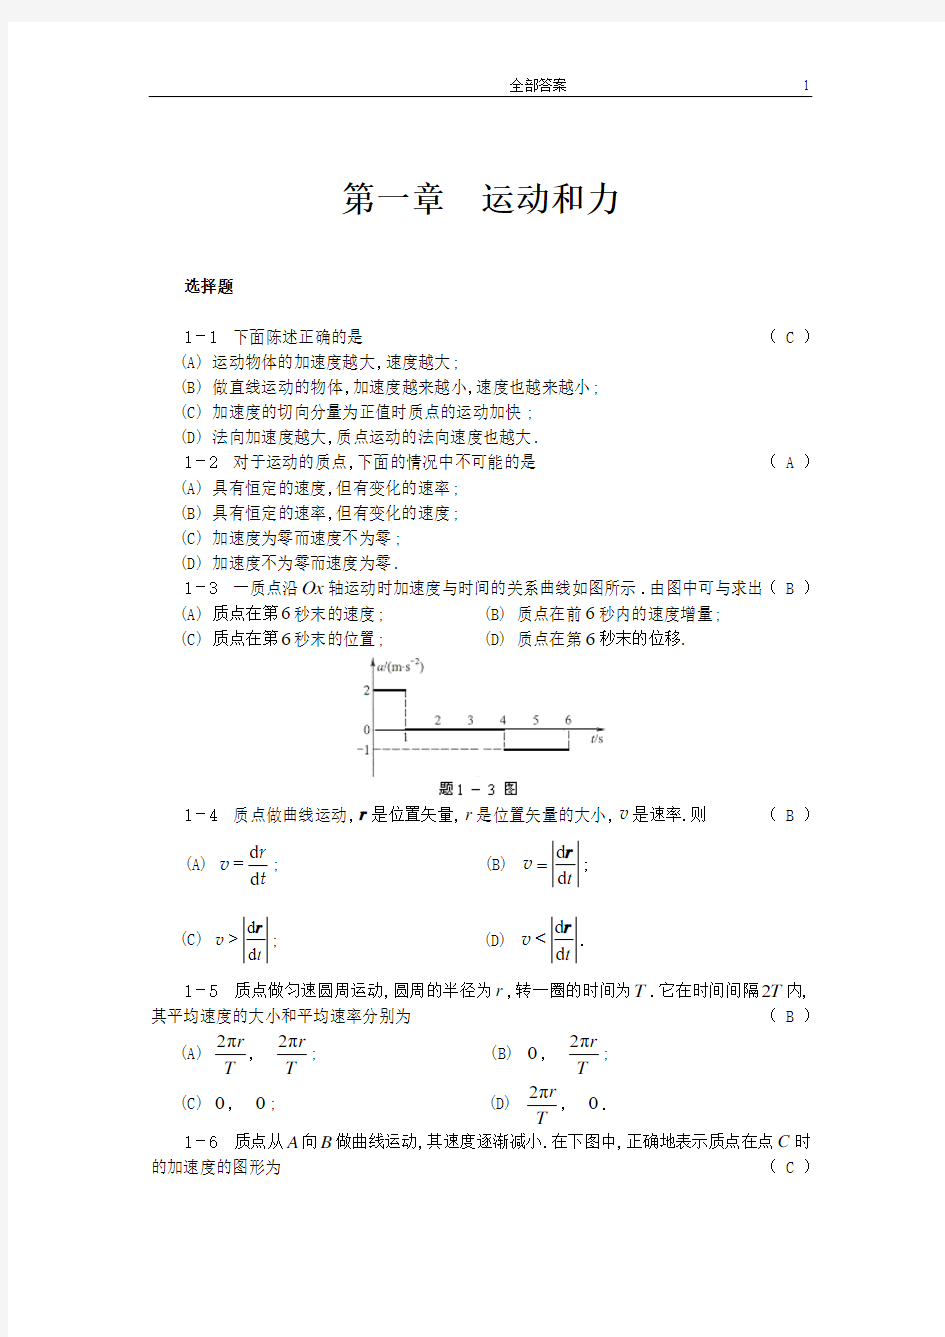 《物理学》李寿松 胡经国 主编 习题解答 一到十二章全部答案